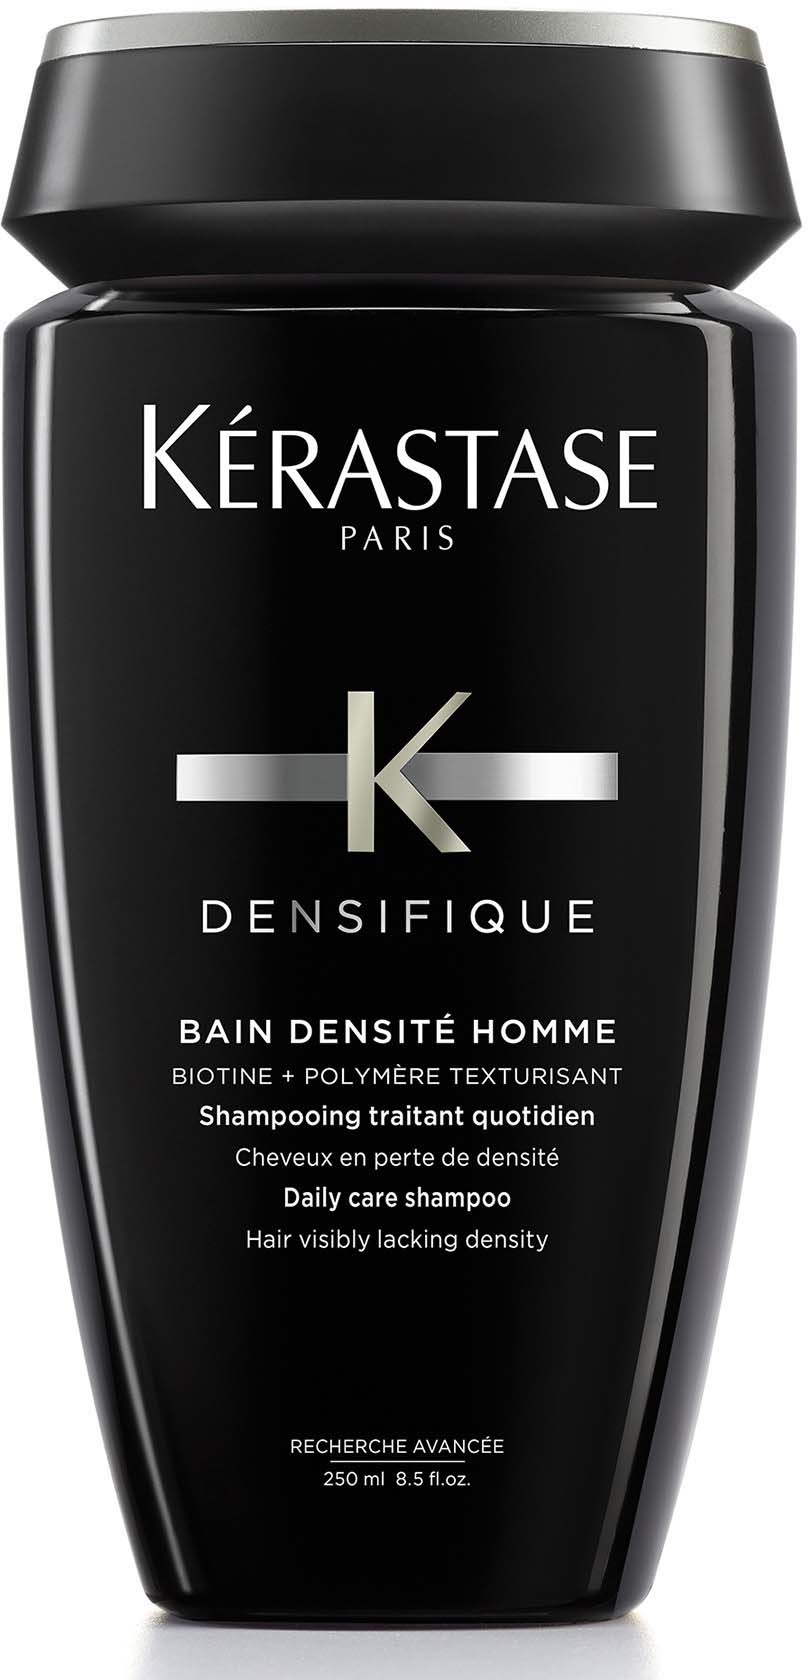 Densifique Bain Densité shampoo 250 |